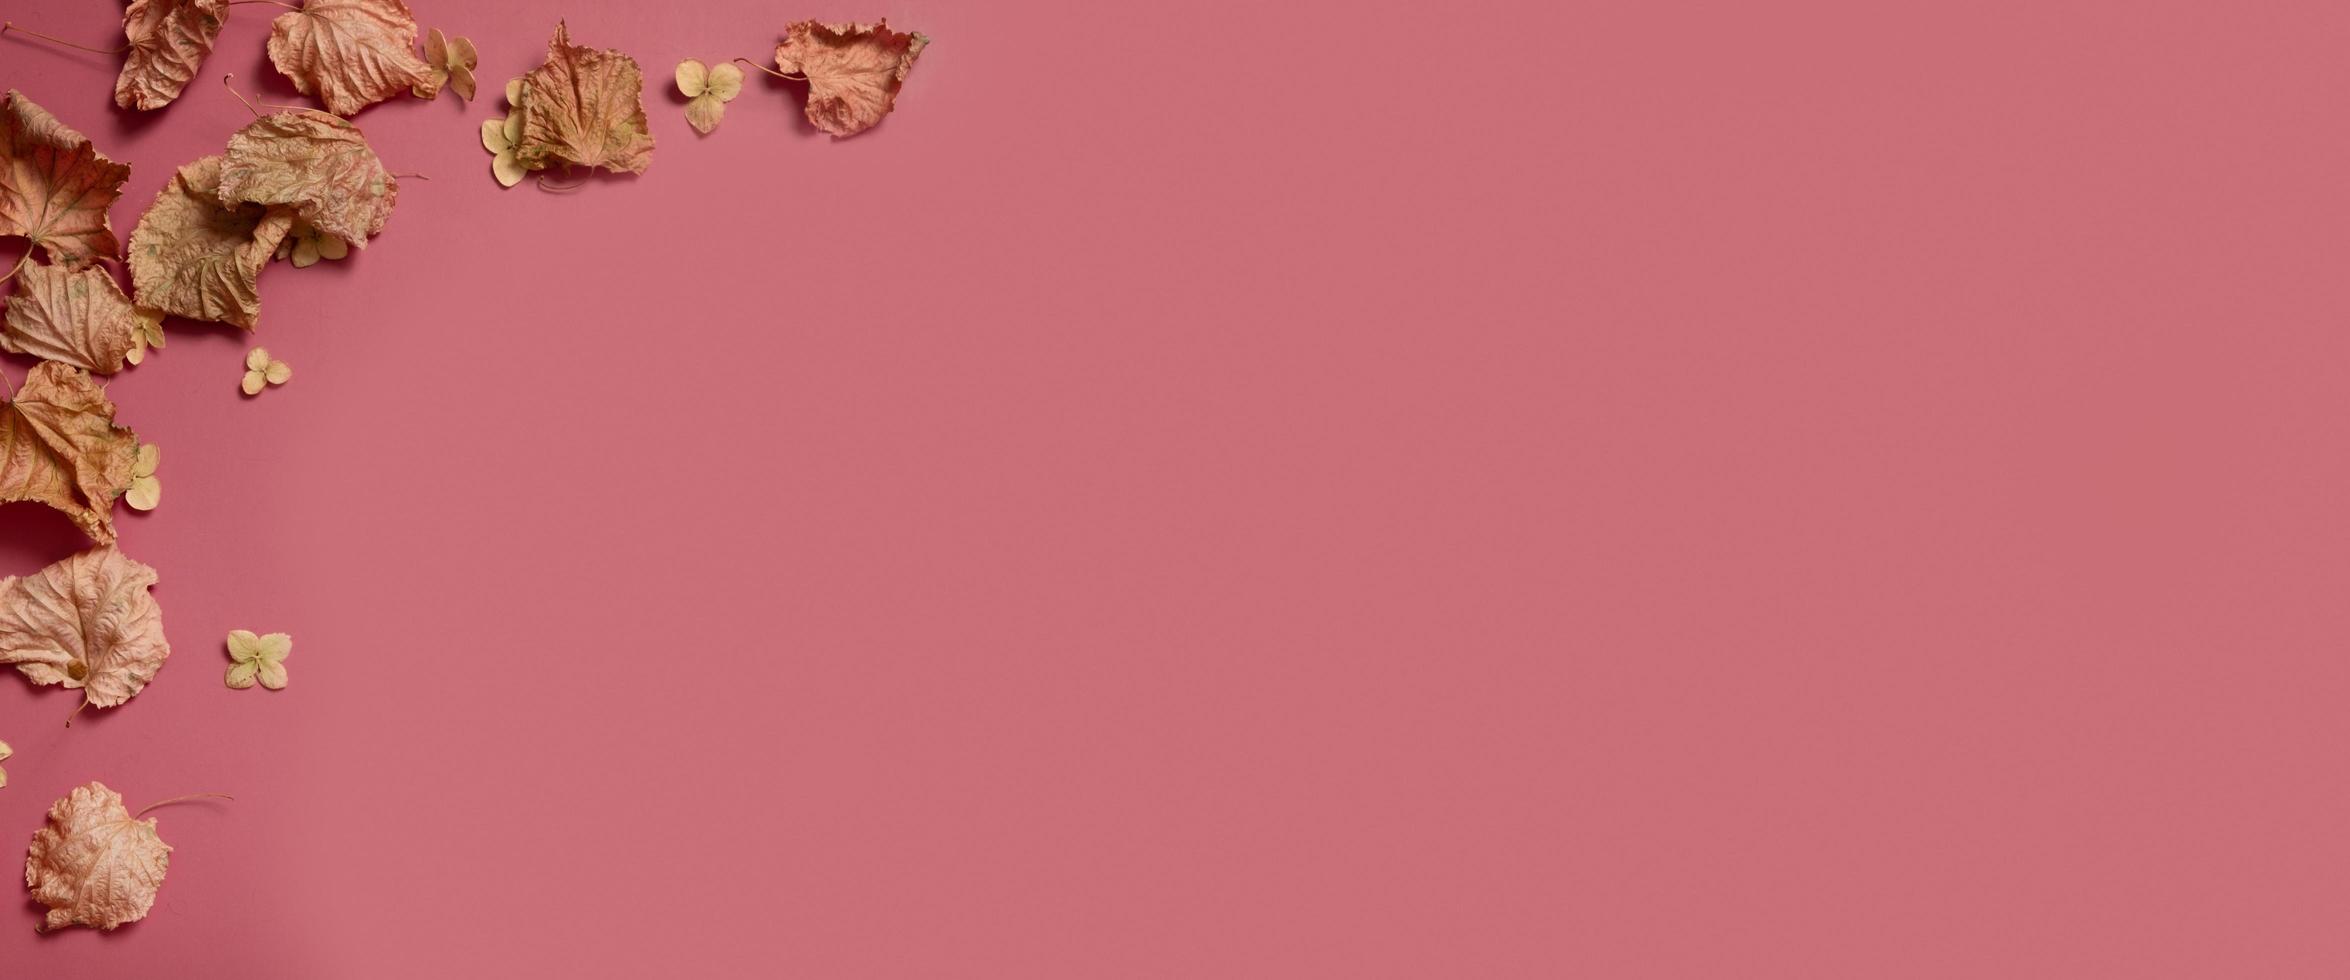 folhas de outono de outono dourado de diferentes formas no fundo rosa. conceito de outono, fundo de outono. design floral mínimo, moldura de folha de outono com espaço de cópia. composição criativa de outono. bandeira foto